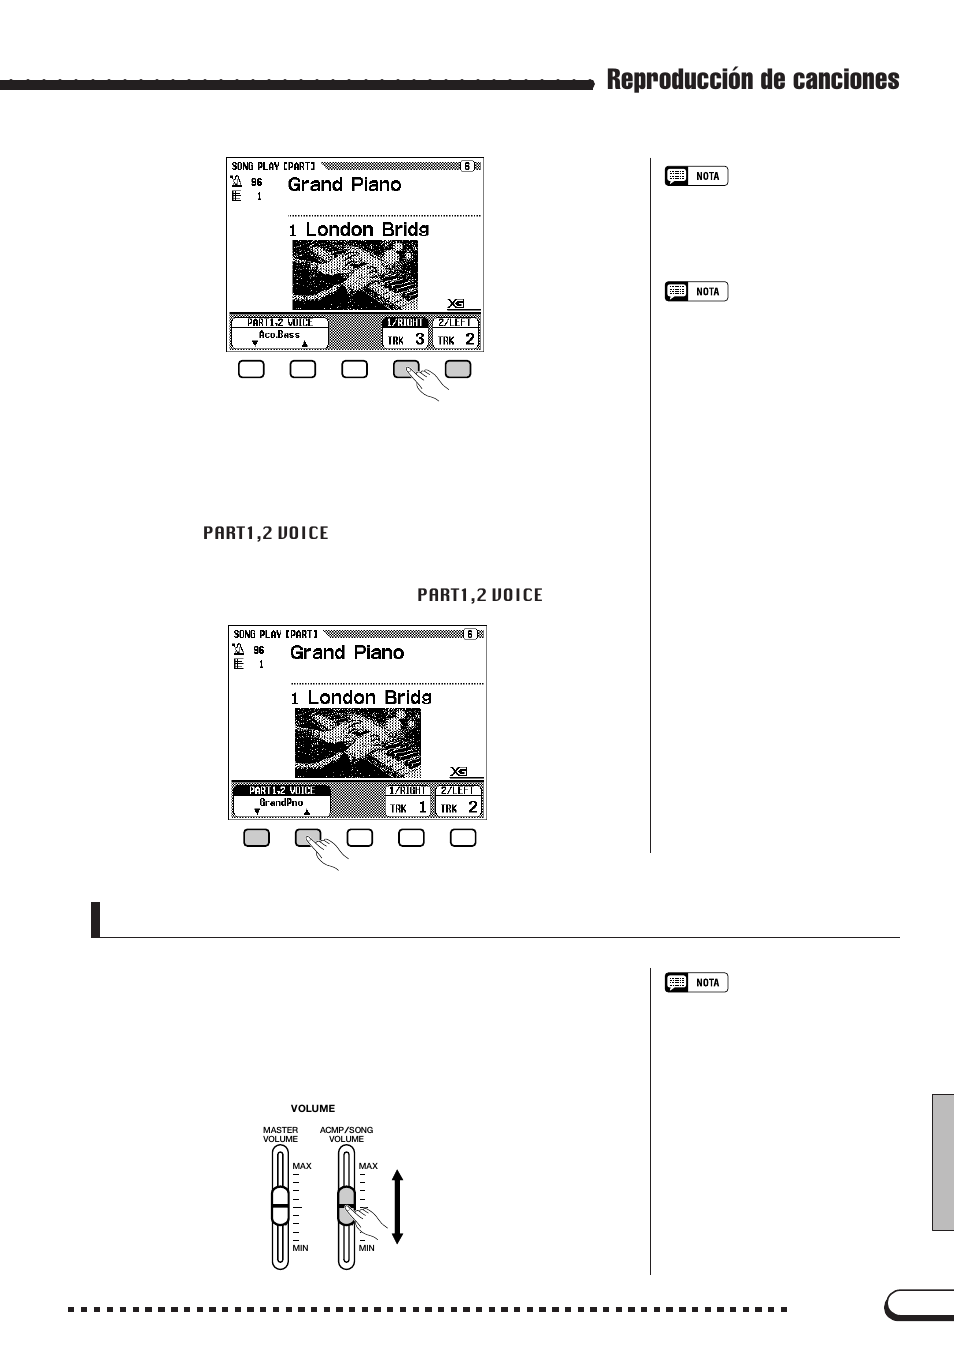 Reproducción de canciones | Yamaha CVP-96 Manual del usuario | Página 95 / 164